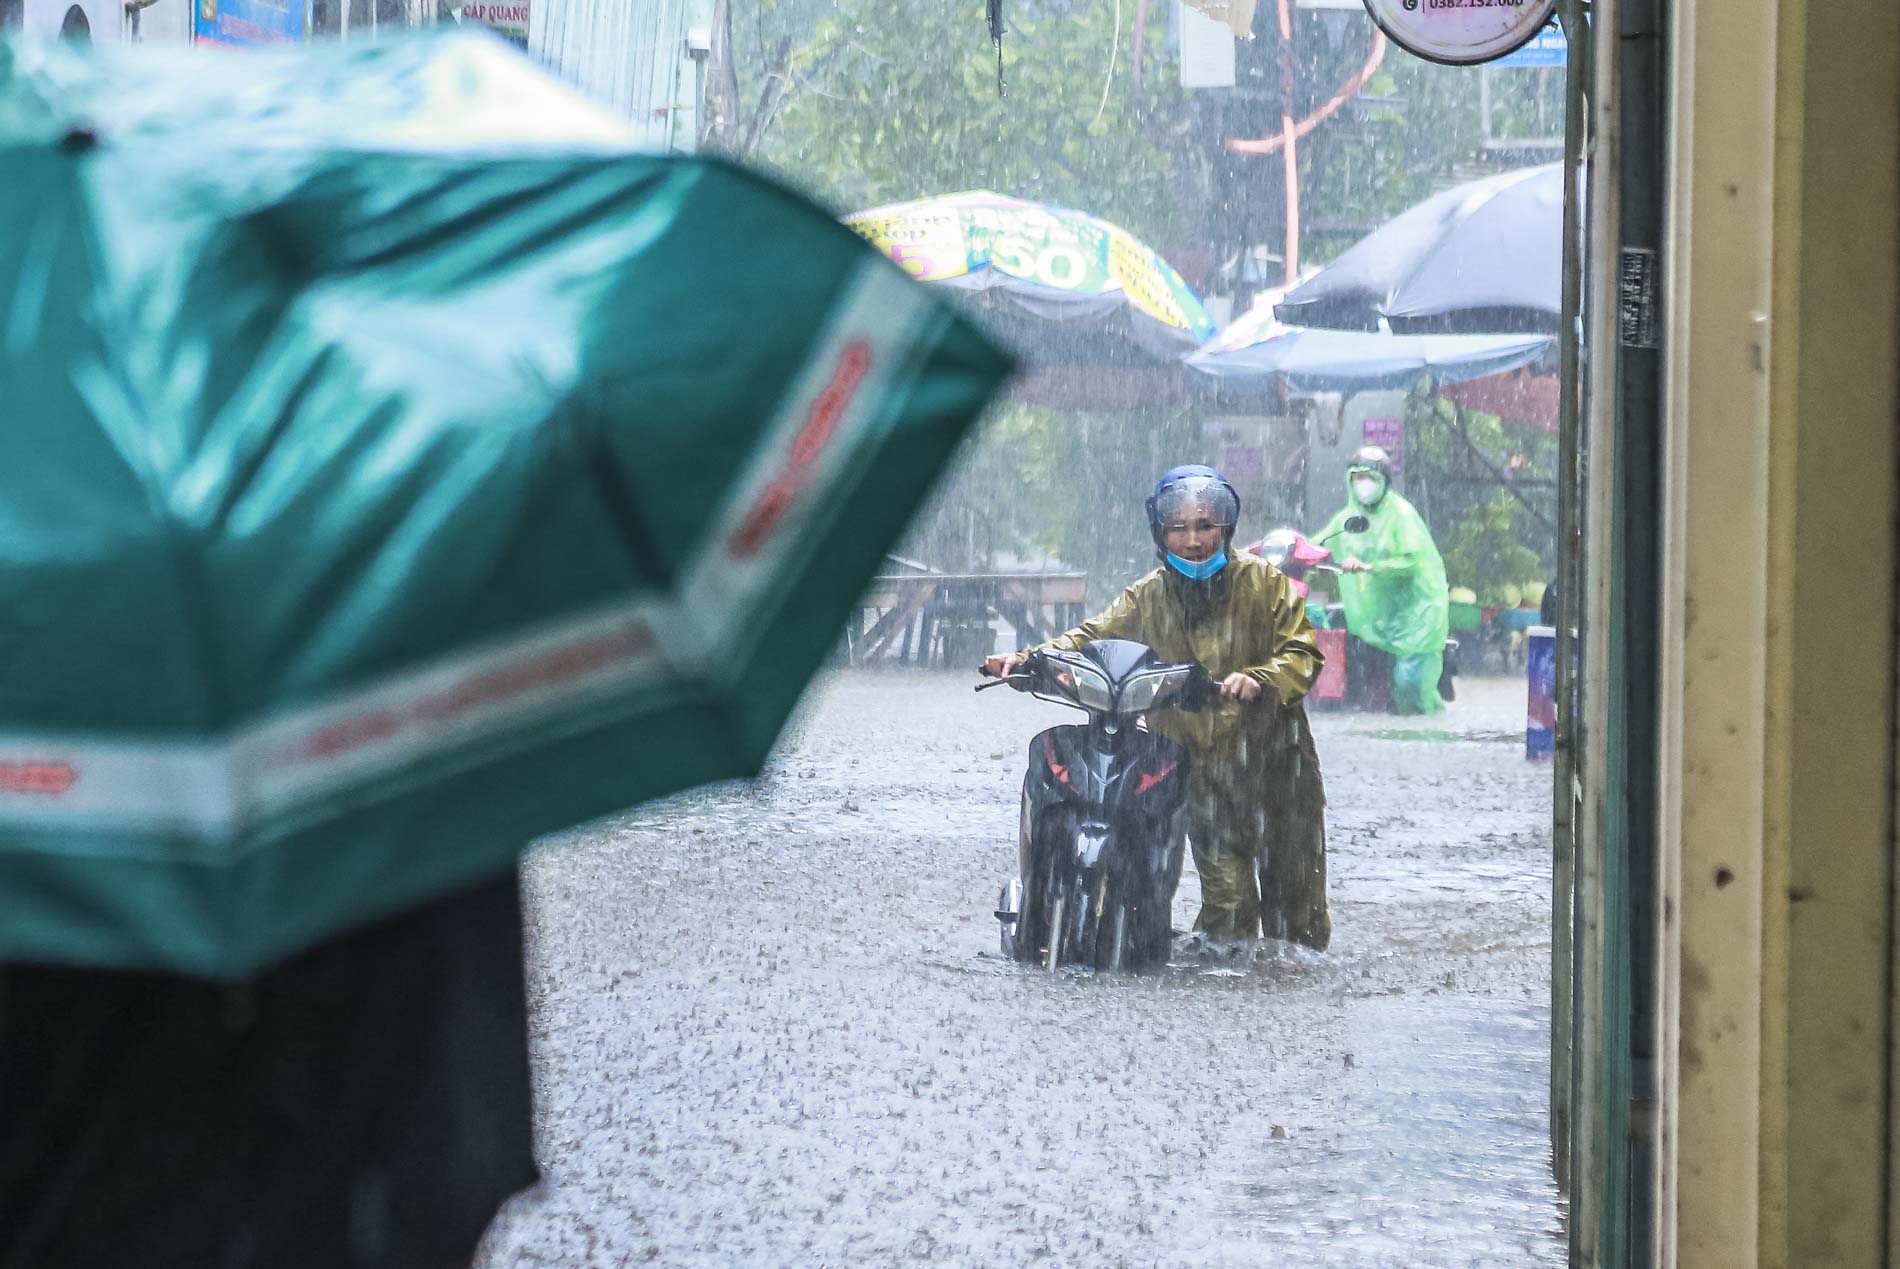 Sau trận mưa lớn, đường phố Hà Nội chìm trong biển nước - Ảnh 2.